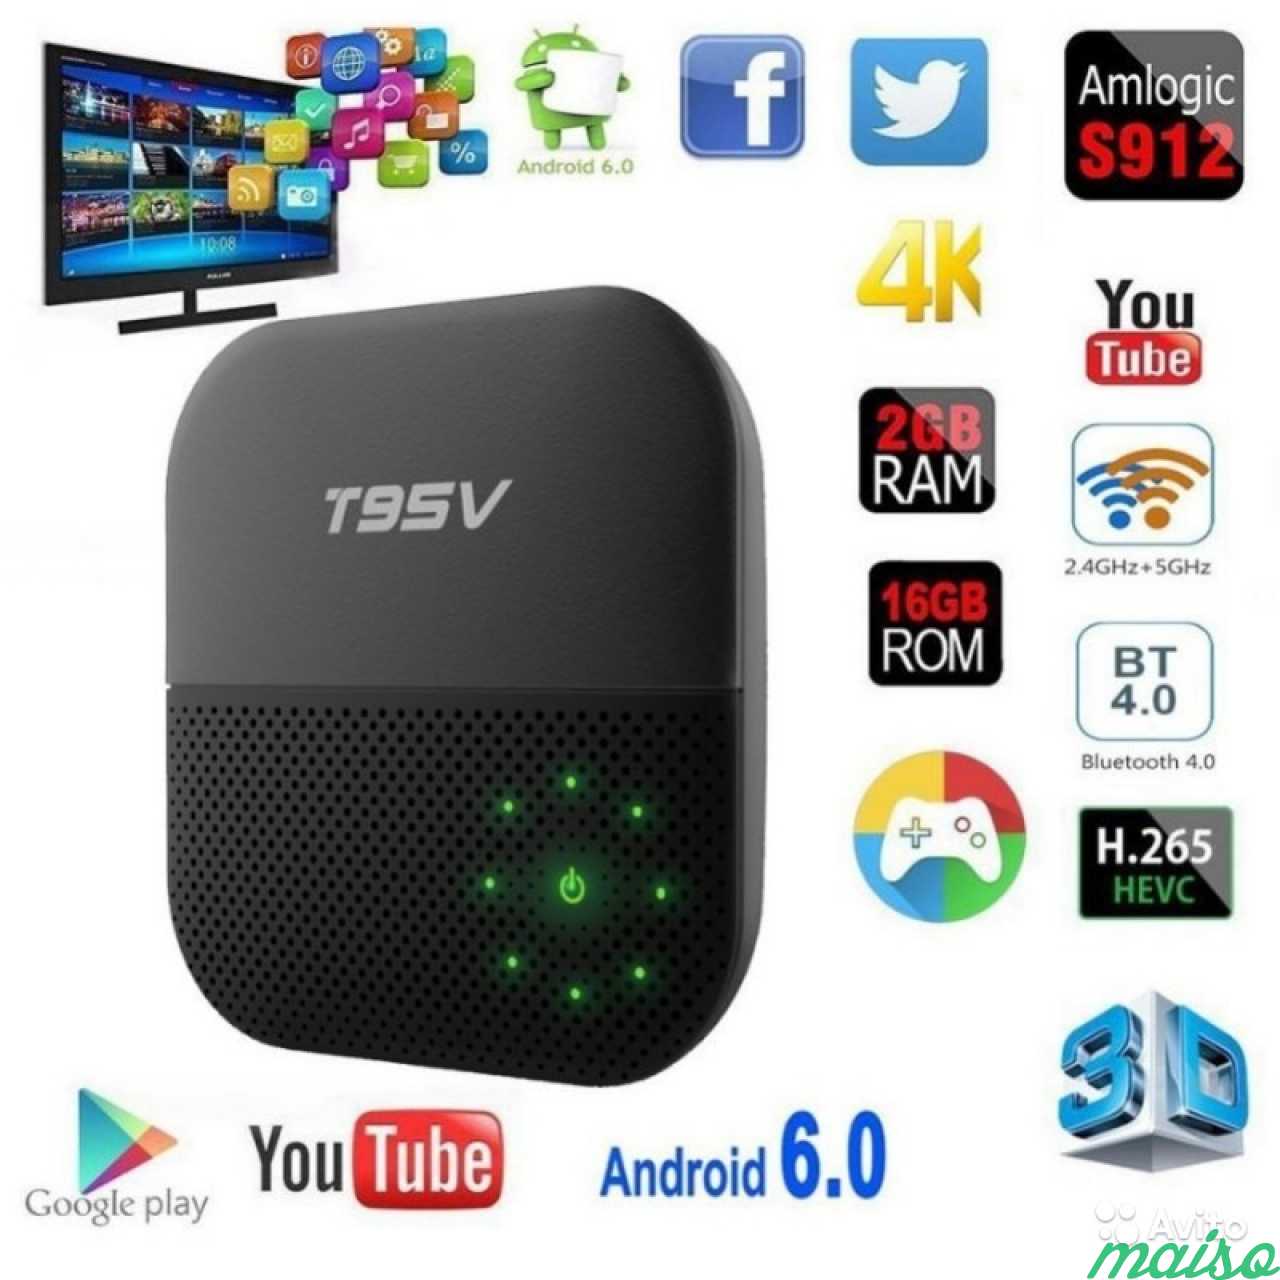 Приставка смарт карта. Приставка t95 для Smart TV. Android смарт ТВ приставки VONTAR. Медиаплеер Sunvell t95v 2gb+16gb. Wr330 IPTV приставка.